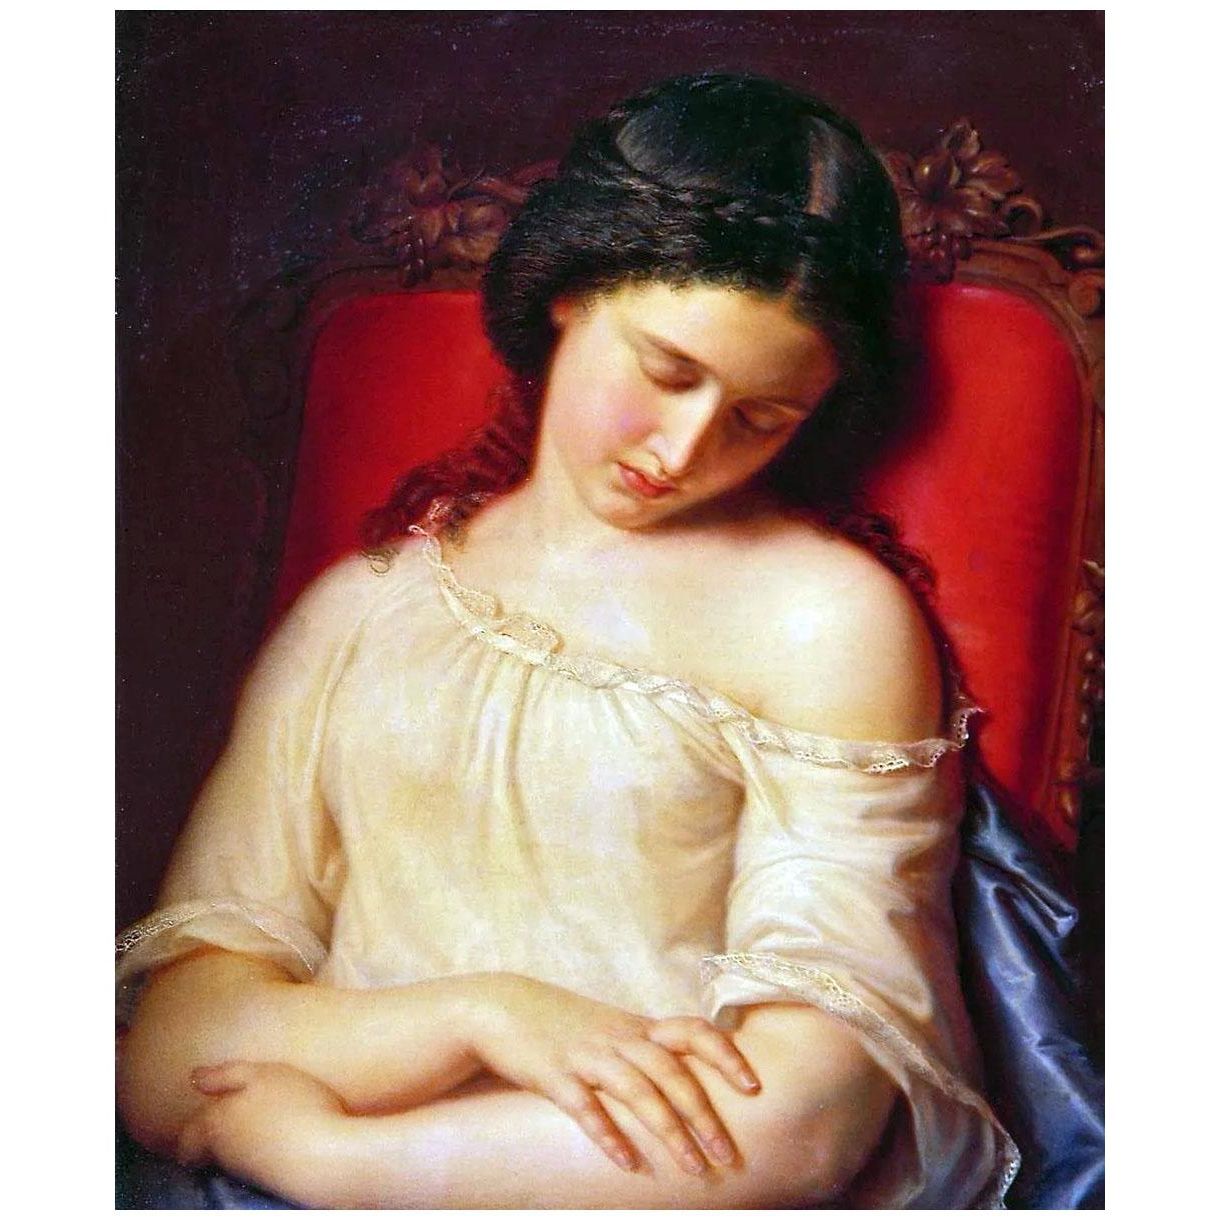 Федор Моллер. Спящая девушка. 1840. Третьяковская галерея